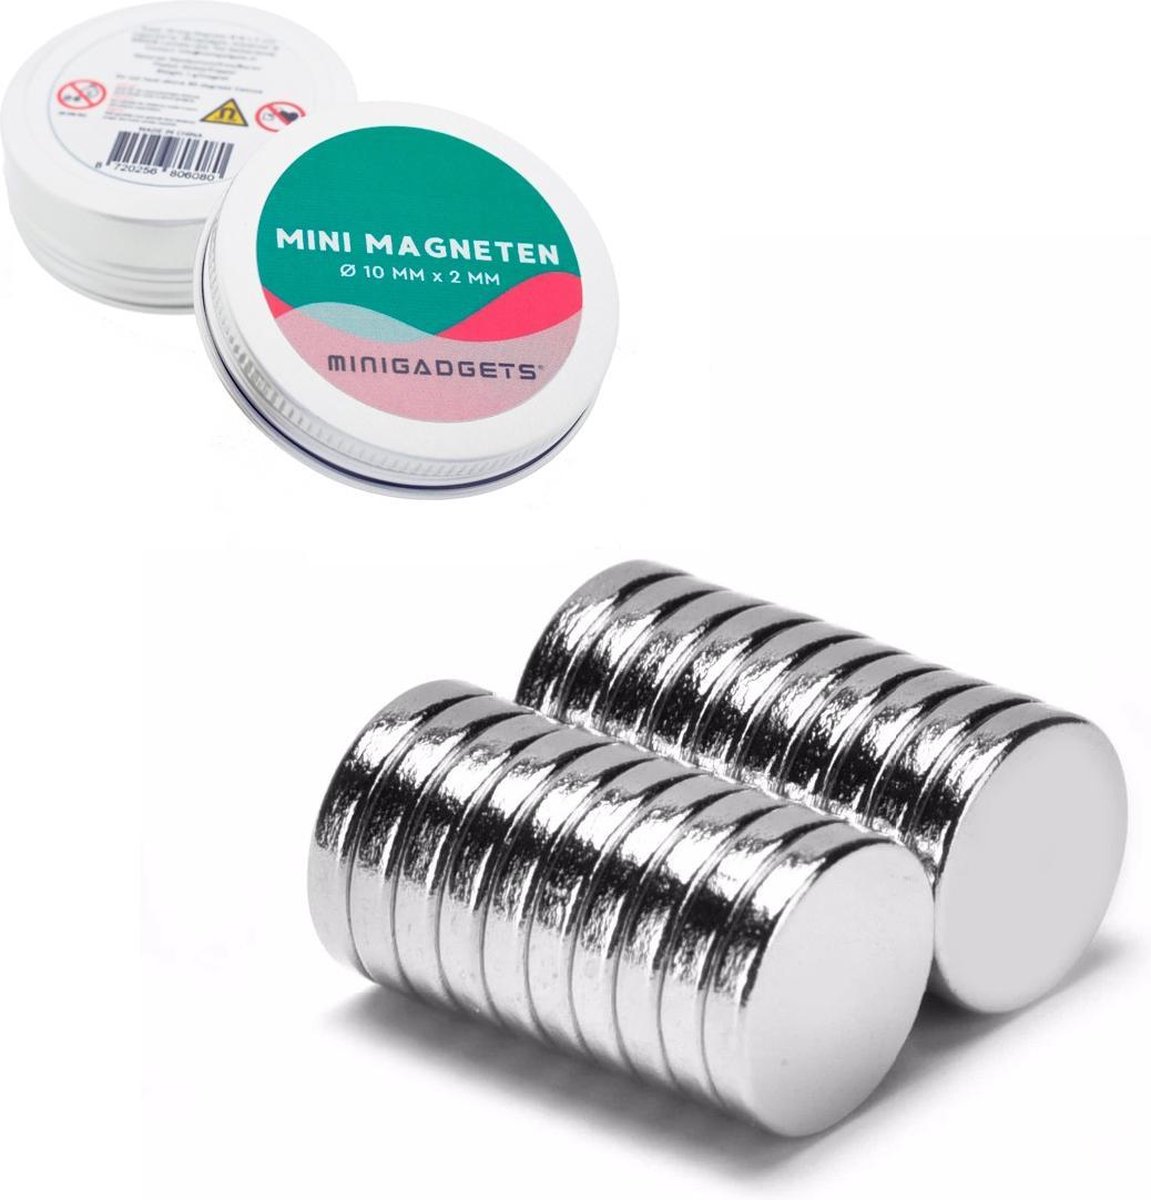 Super sterke magneten - 10 x 2 mm (25-stuks) - Rond - Neodymium - Koelkast magneten - Whiteboard magneten - Corsage – Klein - Ronde - 10x2mm - Minigadgets